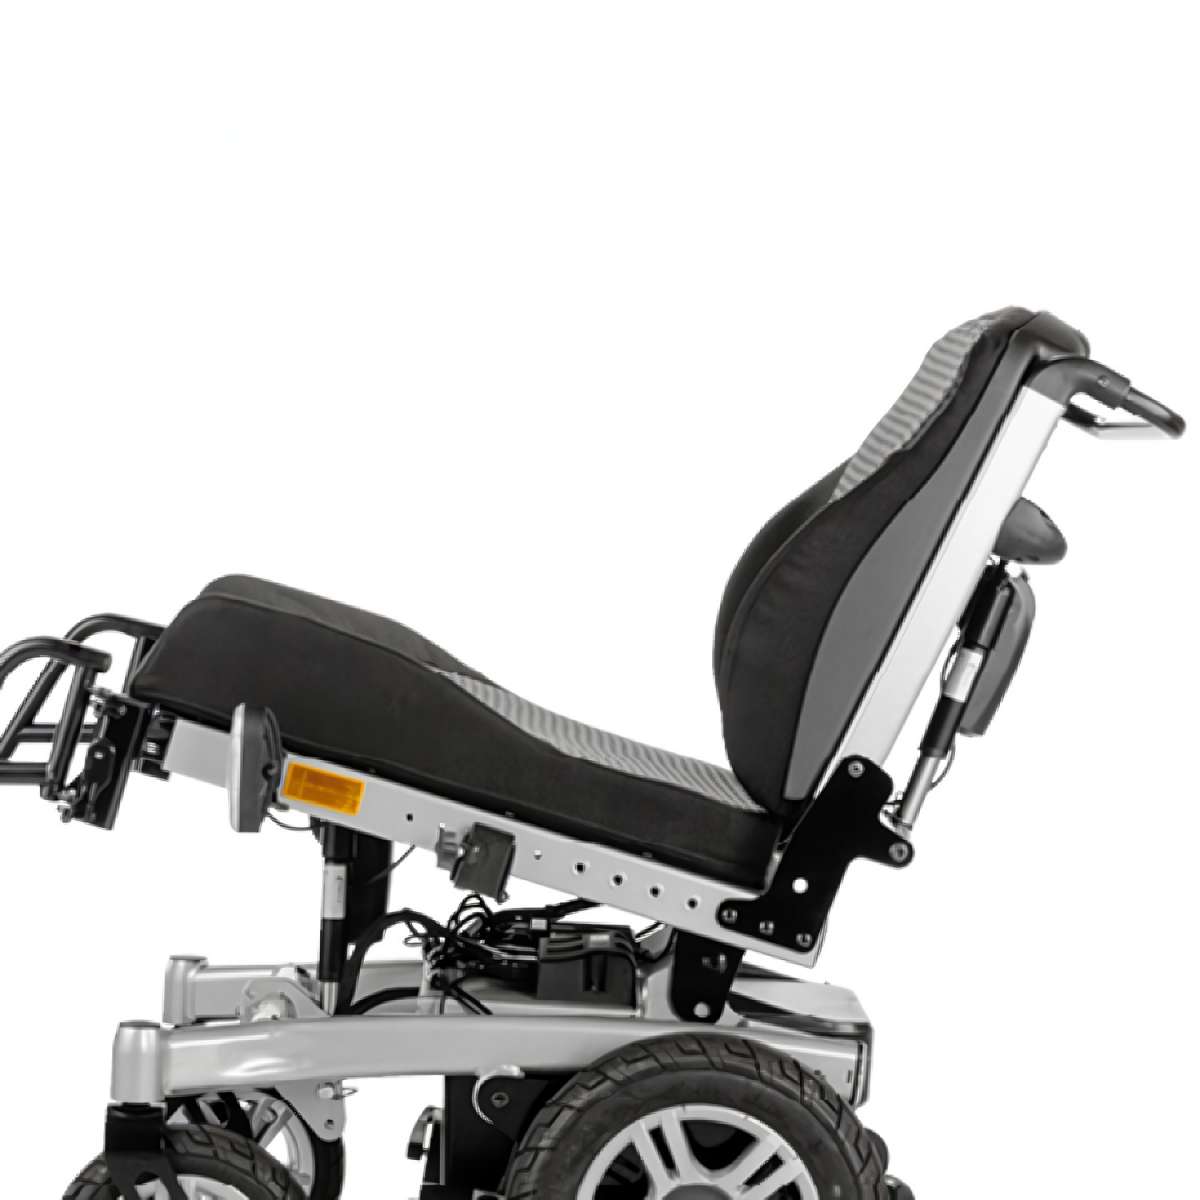 Инвалидная кресло-коляска с электроприводом iChair MC XXL